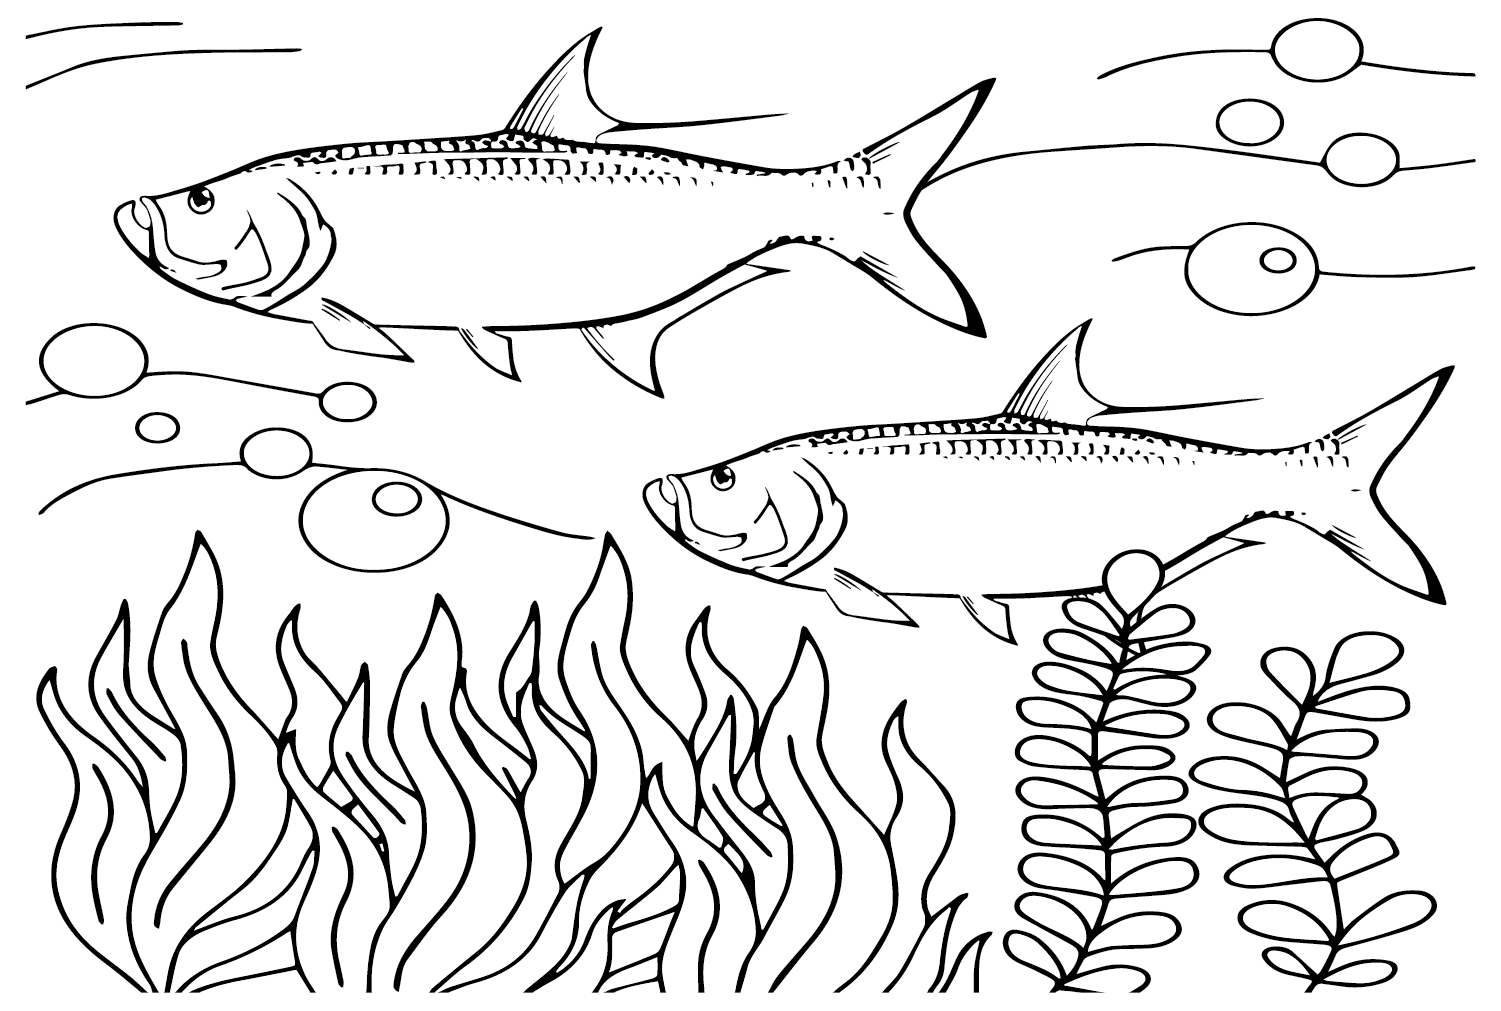 Tarpon Fish Coloring Page